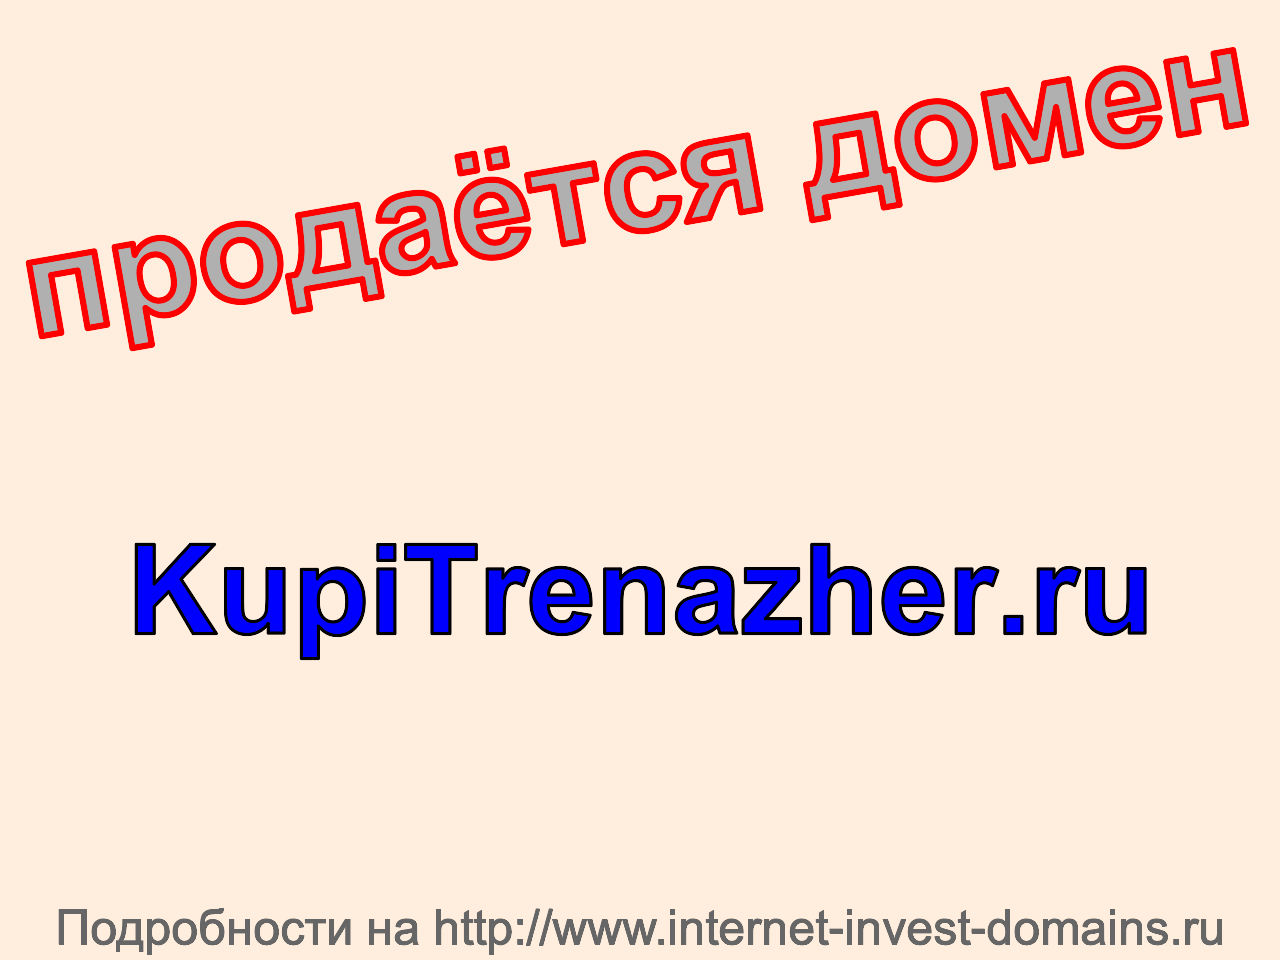 Домен kupitrenazher.ru, купить домен kupitrenazher.ru.